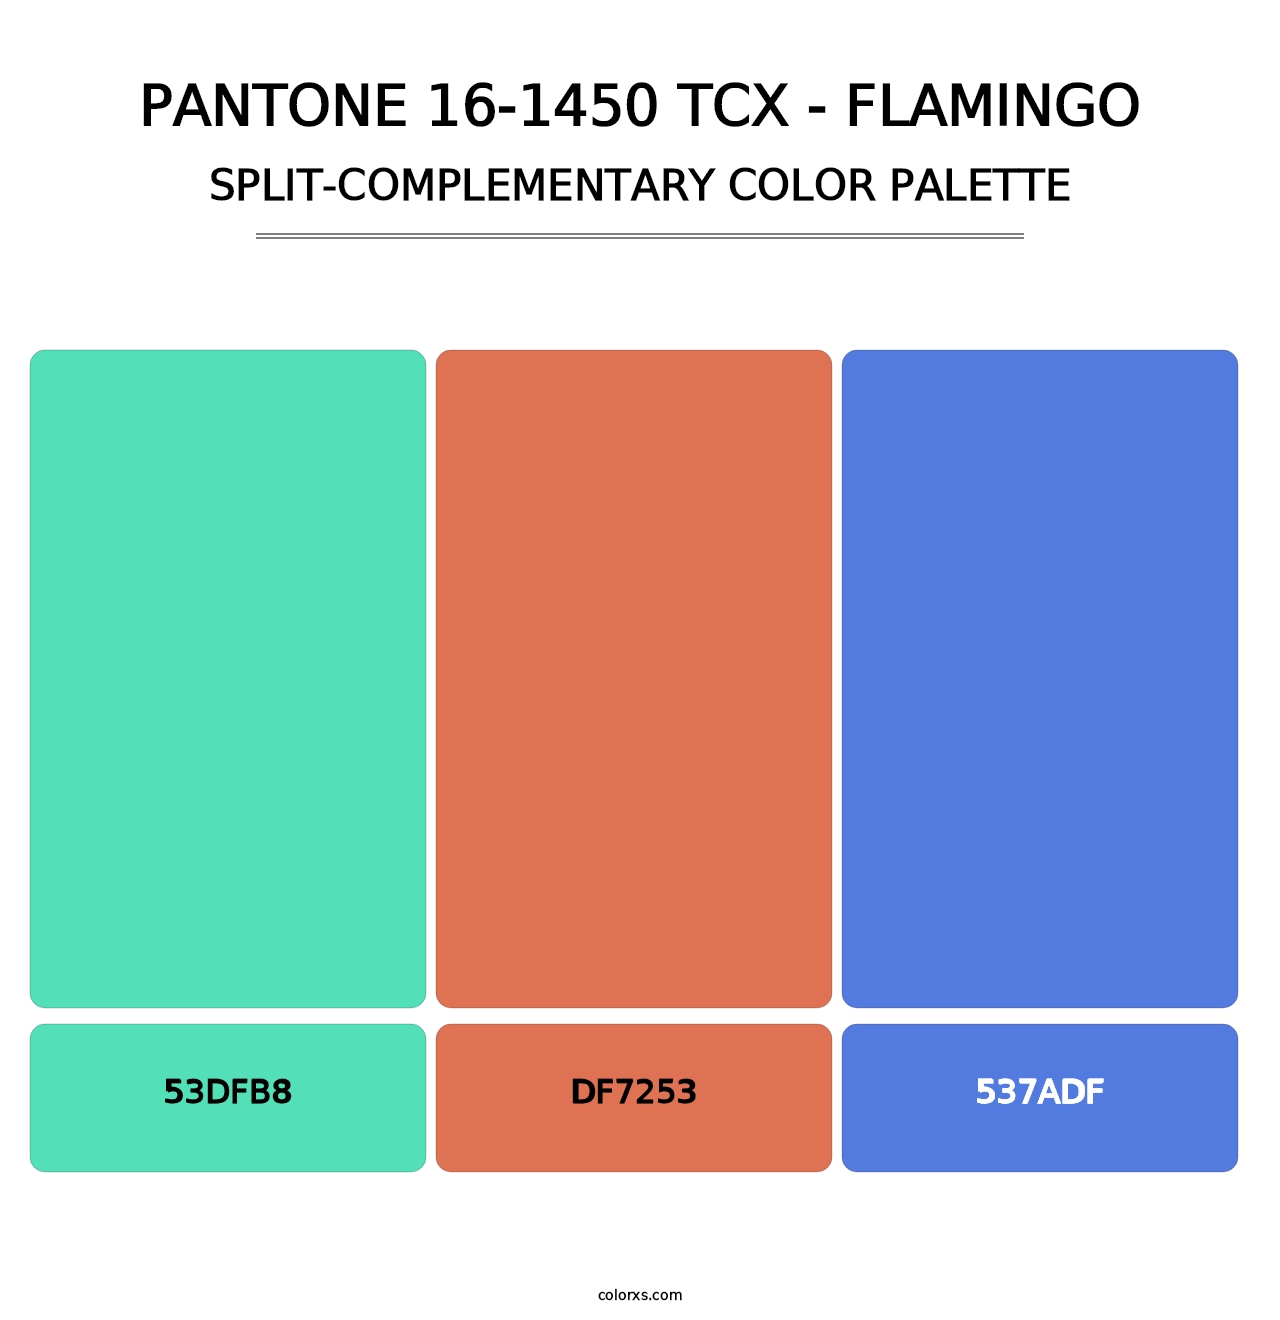 PANTONE 16-1450 TCX - Flamingo - Split-Complementary Color Palette